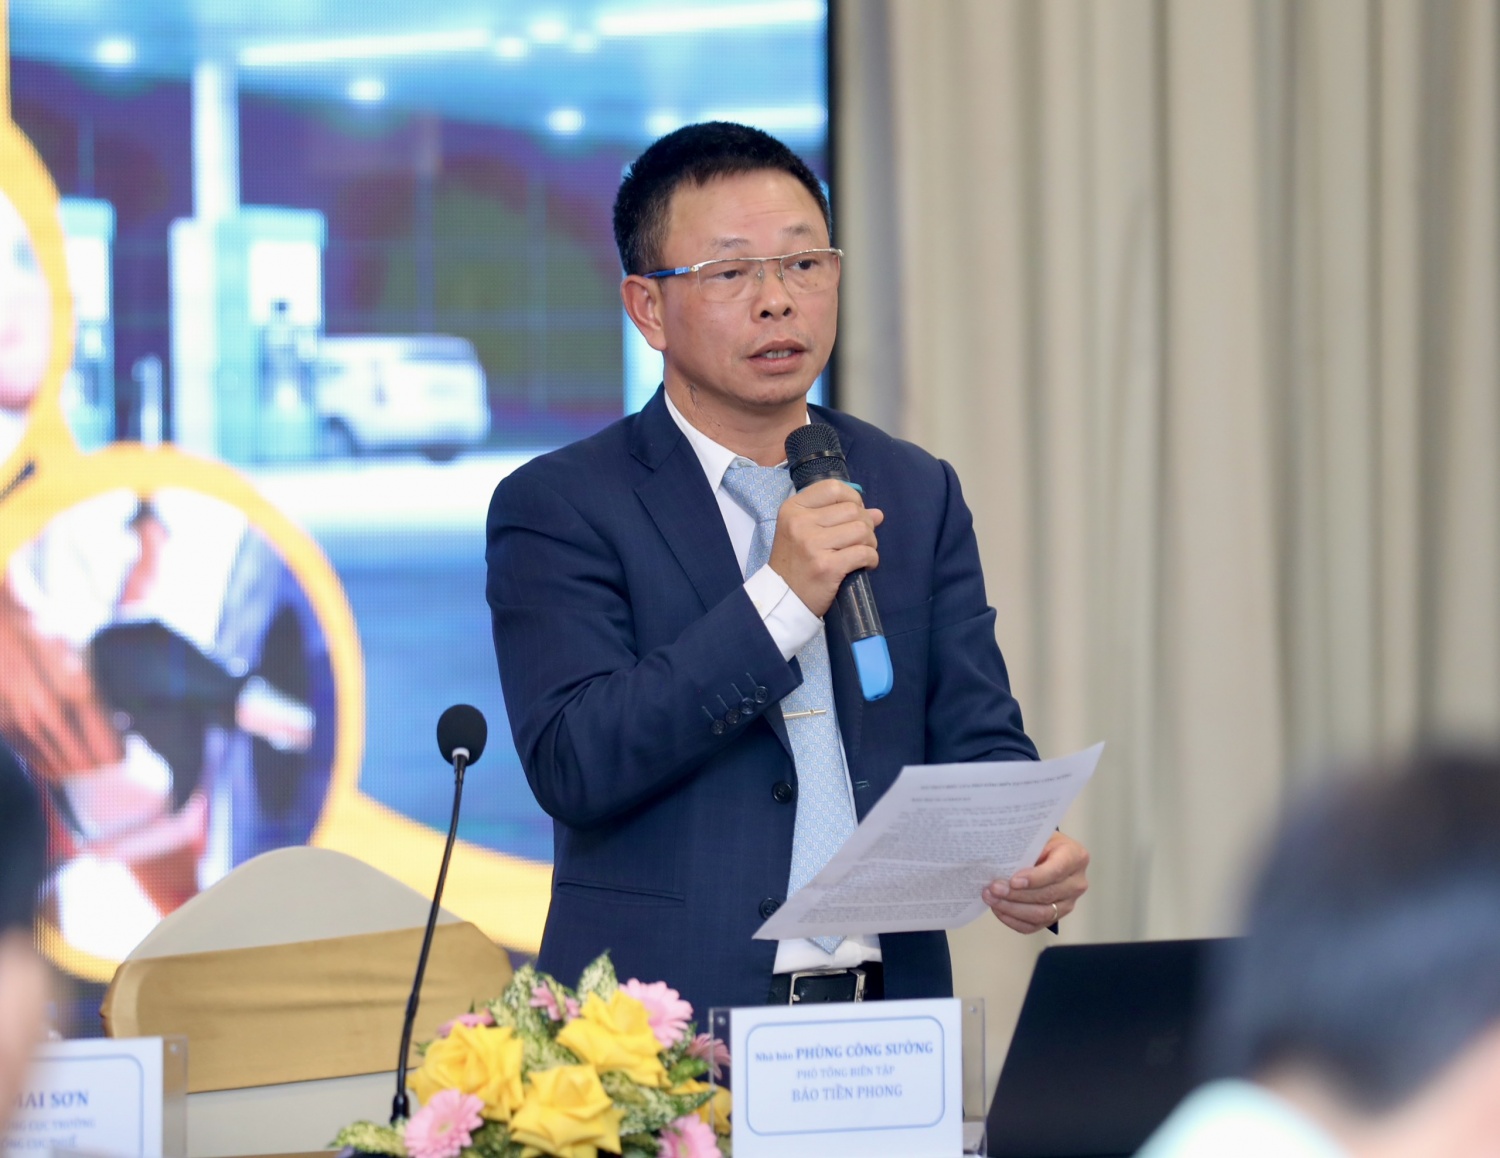 Nhà báo Phùng Công Sưởng - Phó Tổng Biên tập Báo Tiền Phong phát biểu